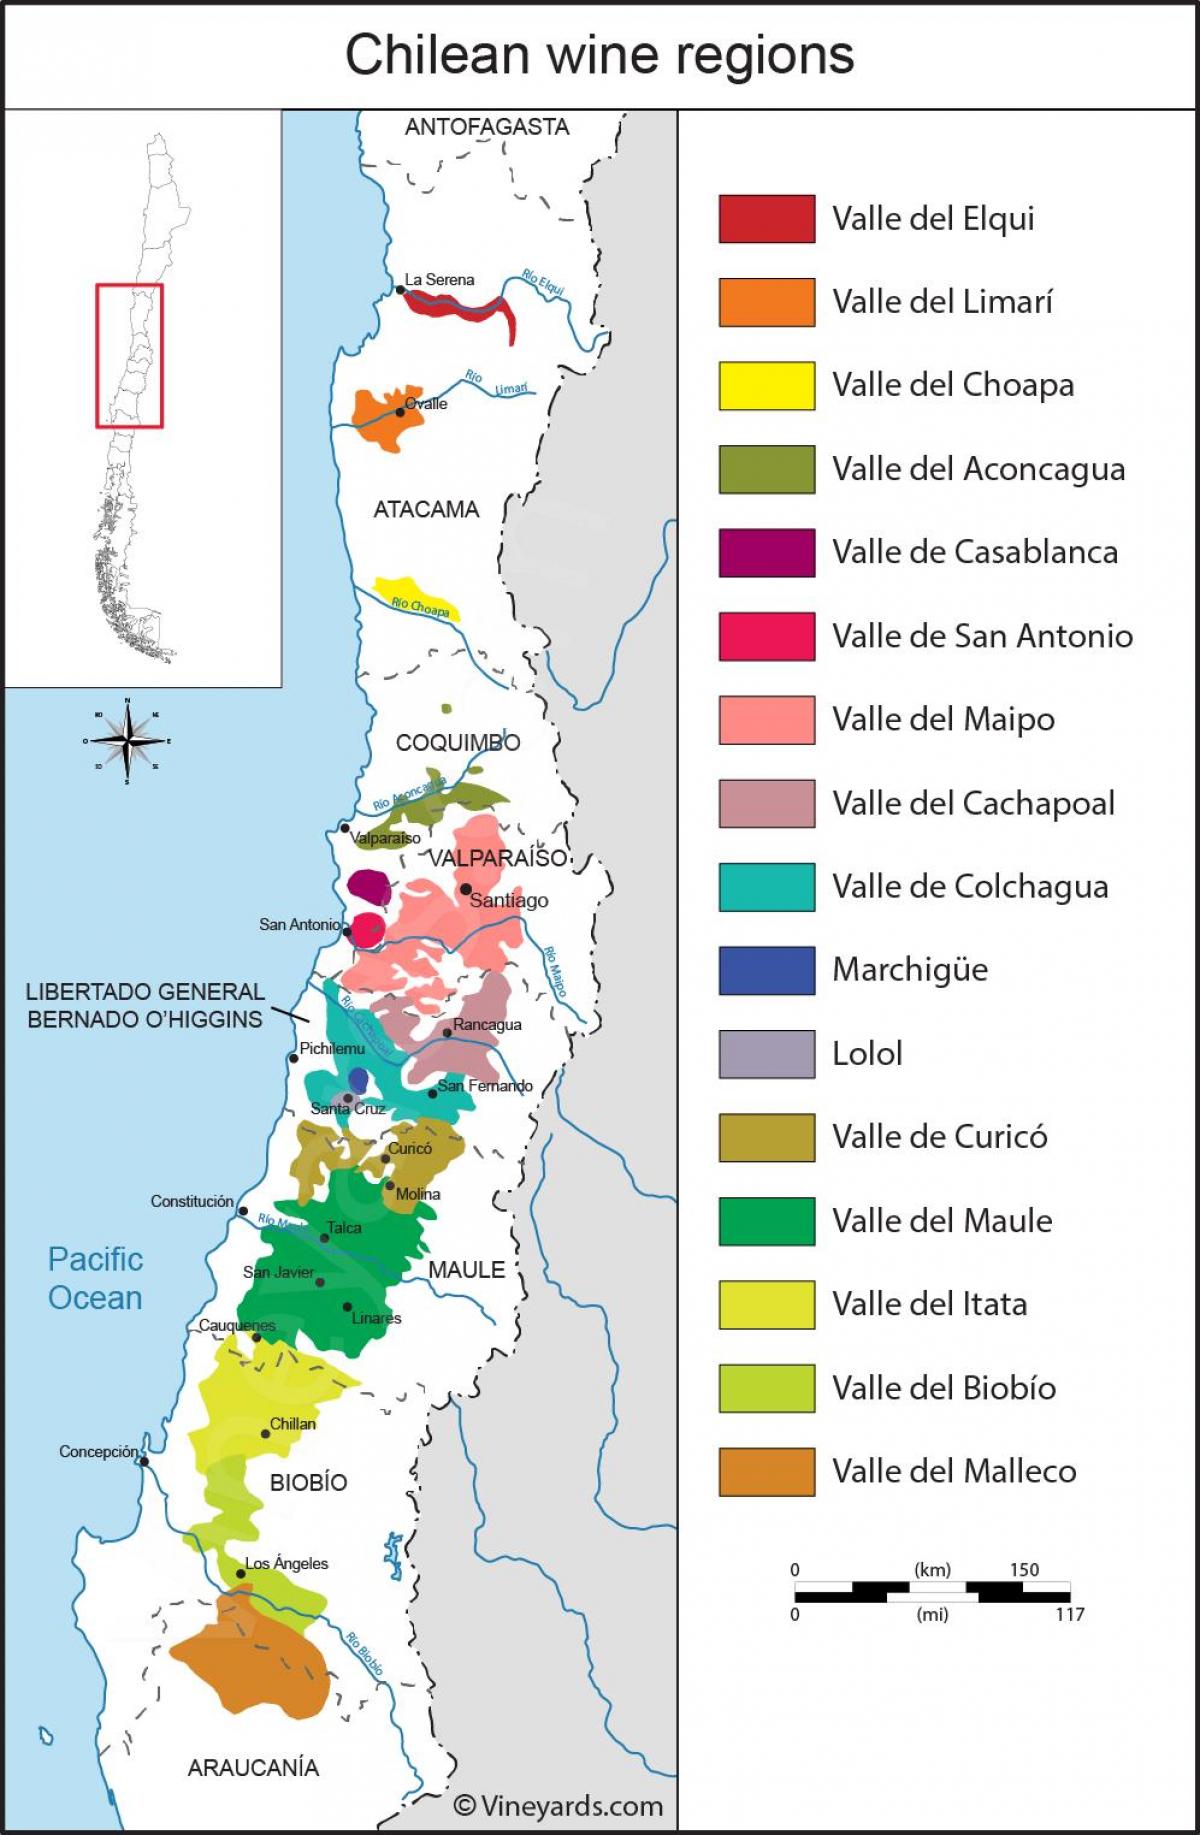 Karta vinskih regija Čile 